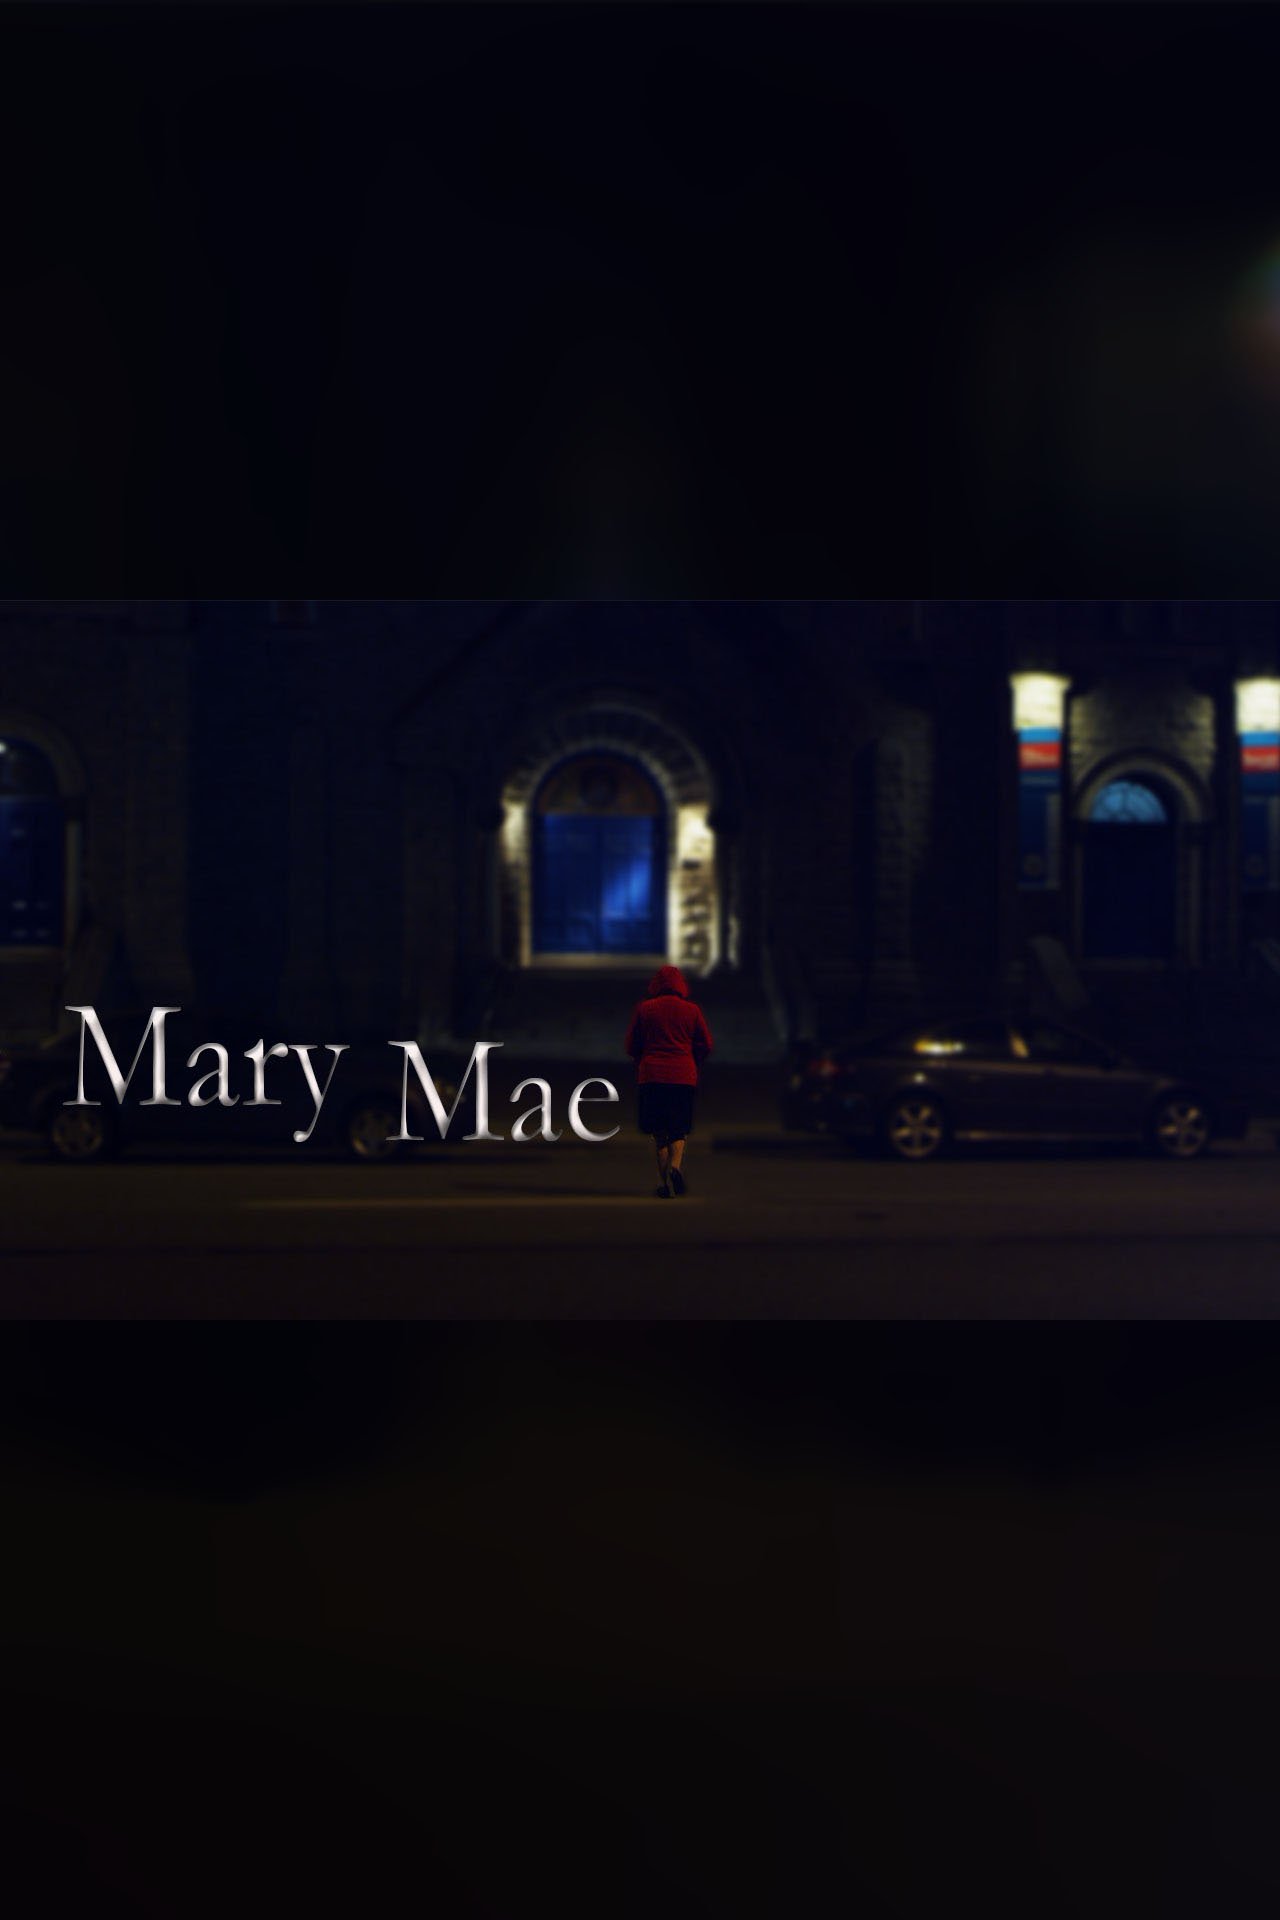 Mary Mae